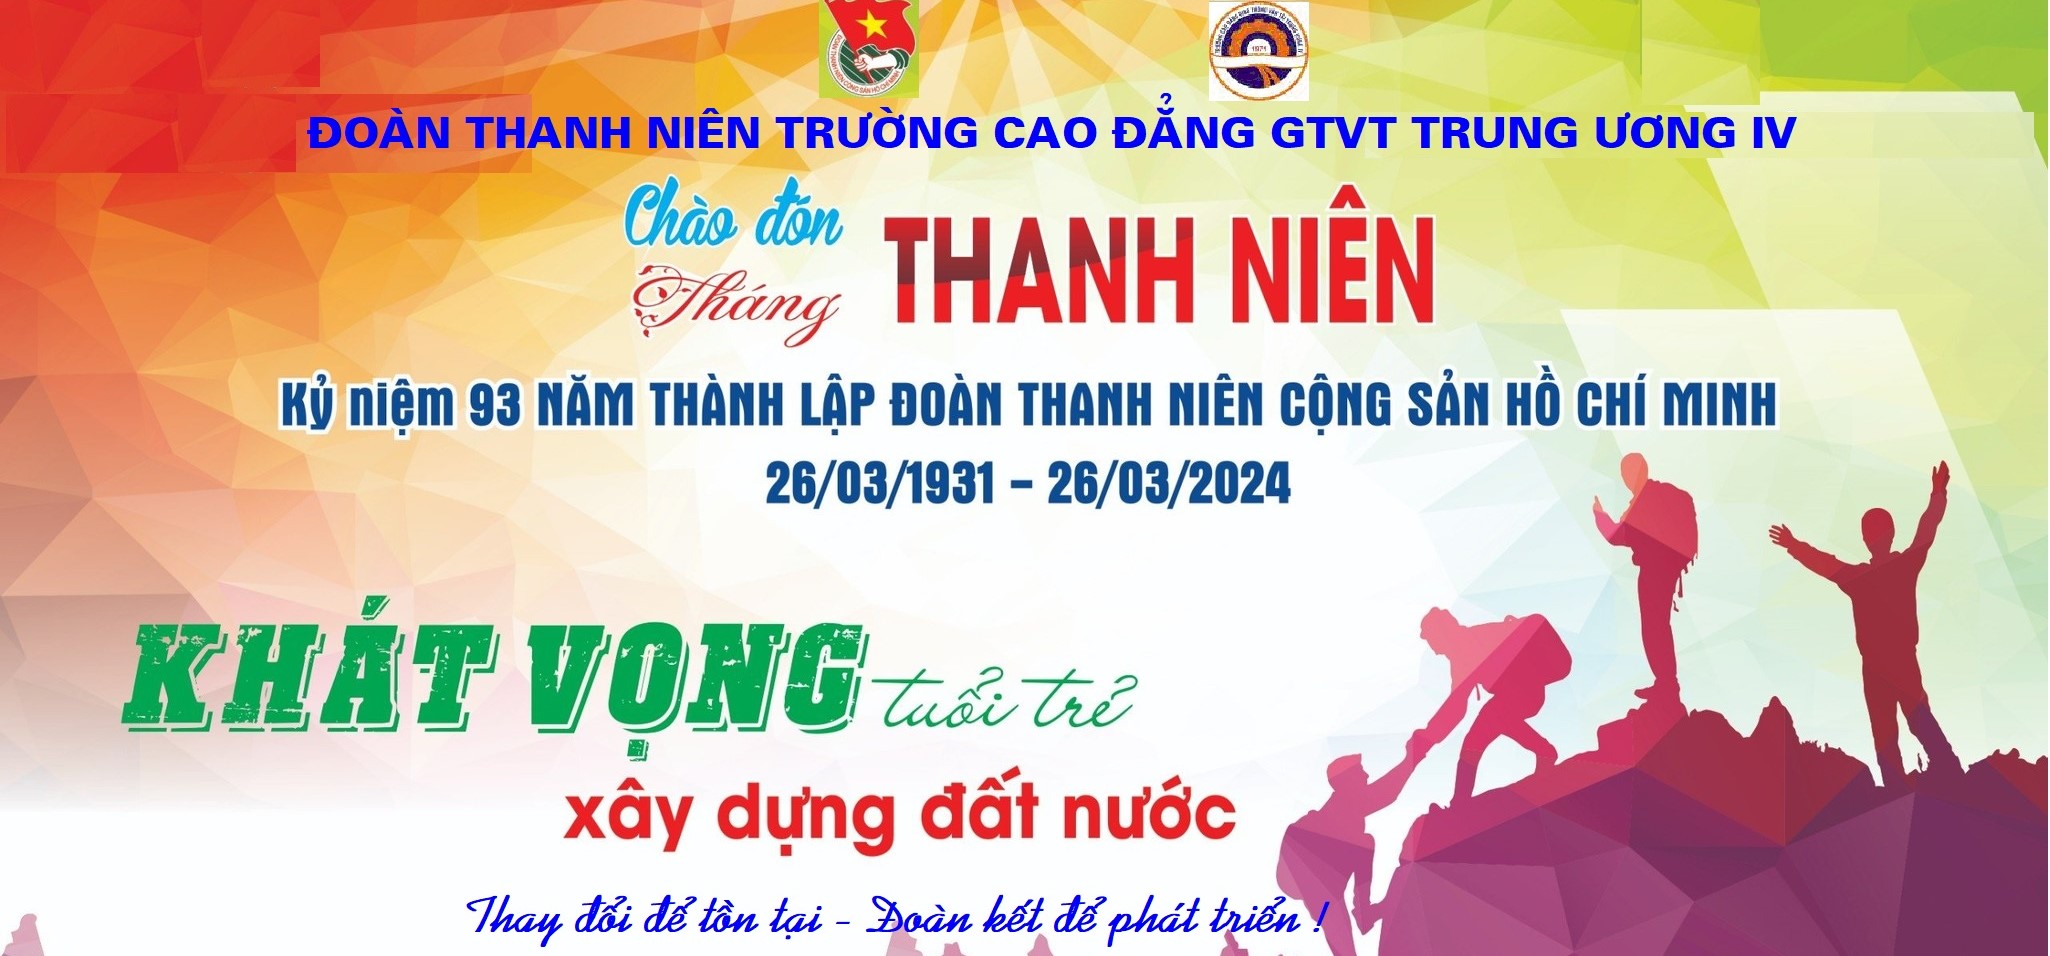 dOAN THANH NIEN